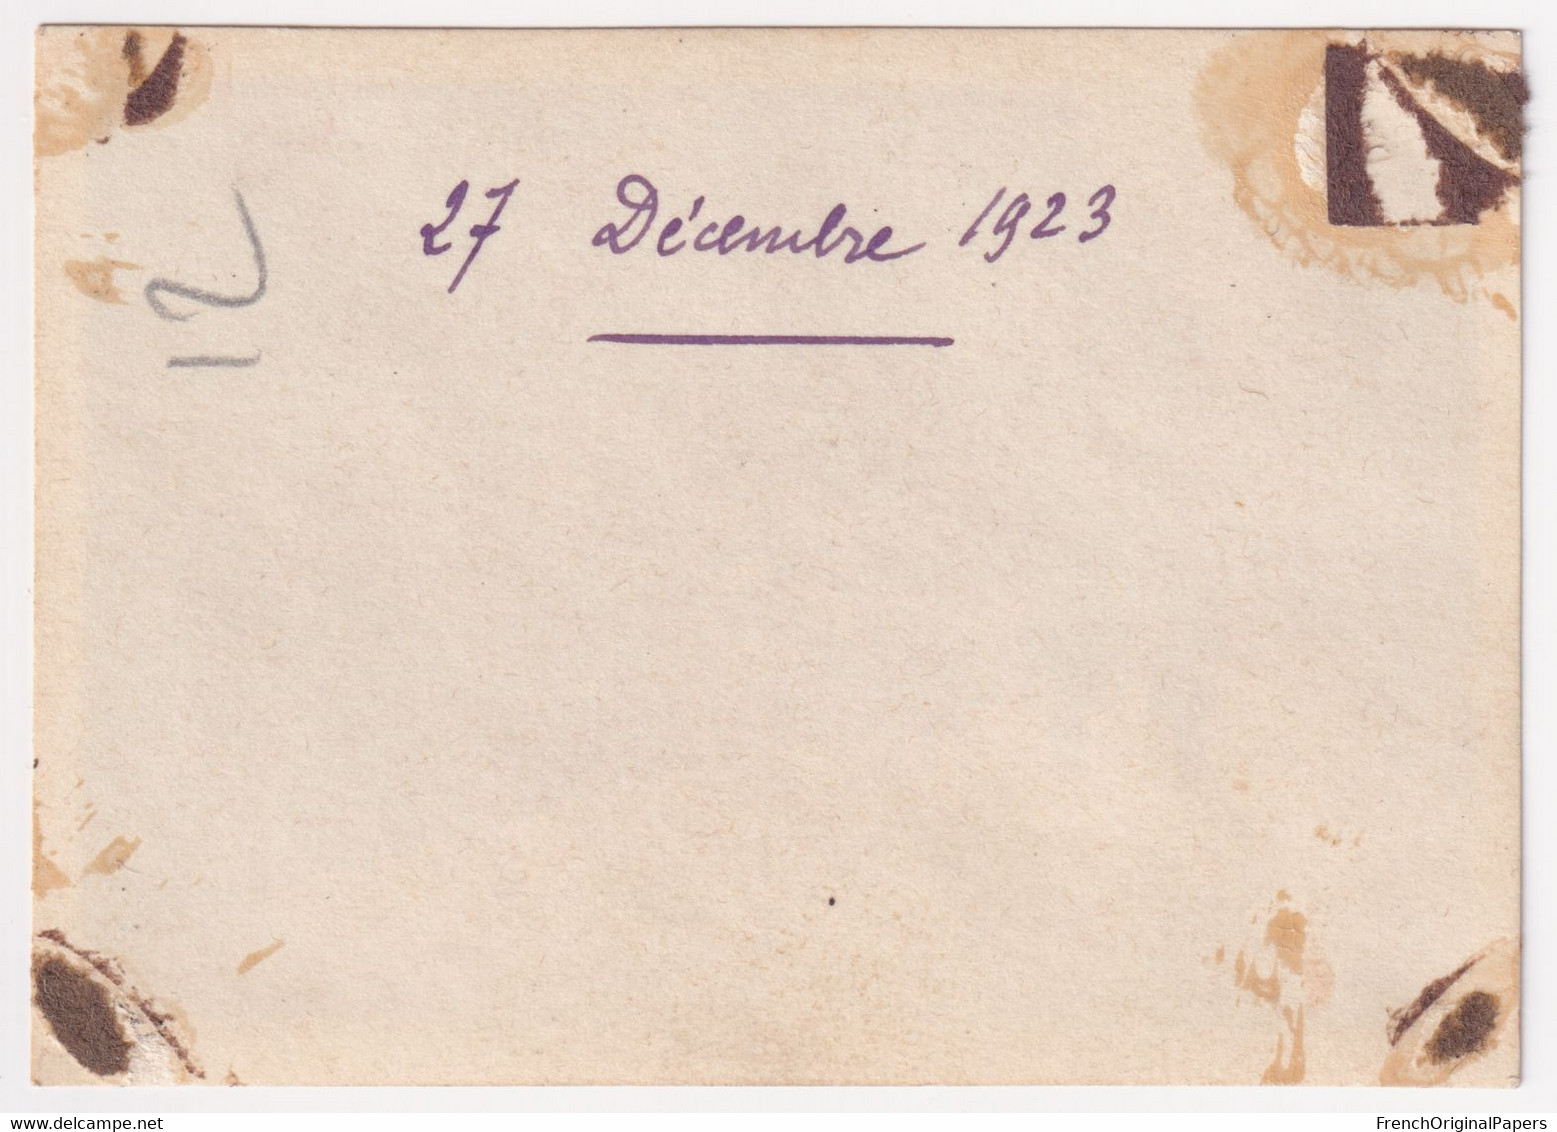 La Basse Scie 54 Chasse - Rare Petite Photo 1923 8x5,5cm Massif Des Vosges Angomont Env. Cirey Val Et Chatillon A86-23 - Lugares